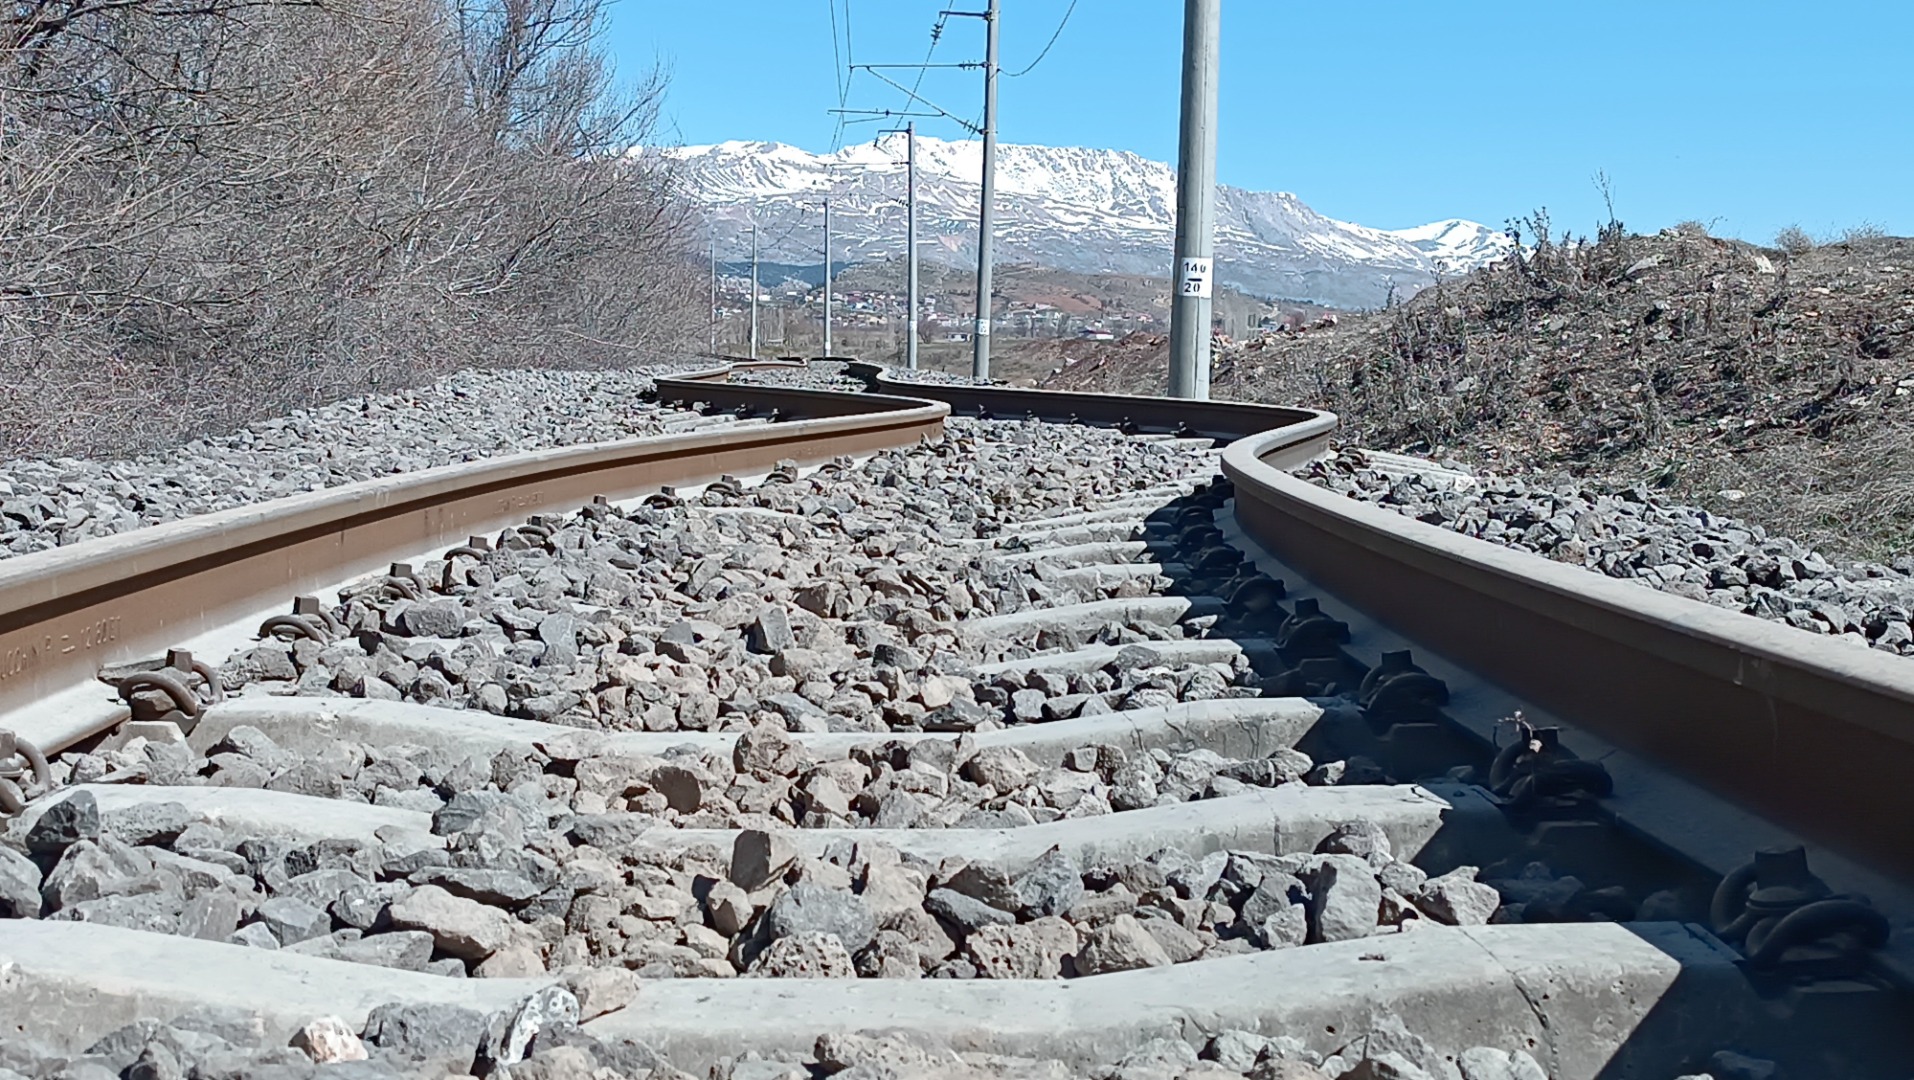 Bin 245 kilometrelik demiryolu depremde hasar gördü